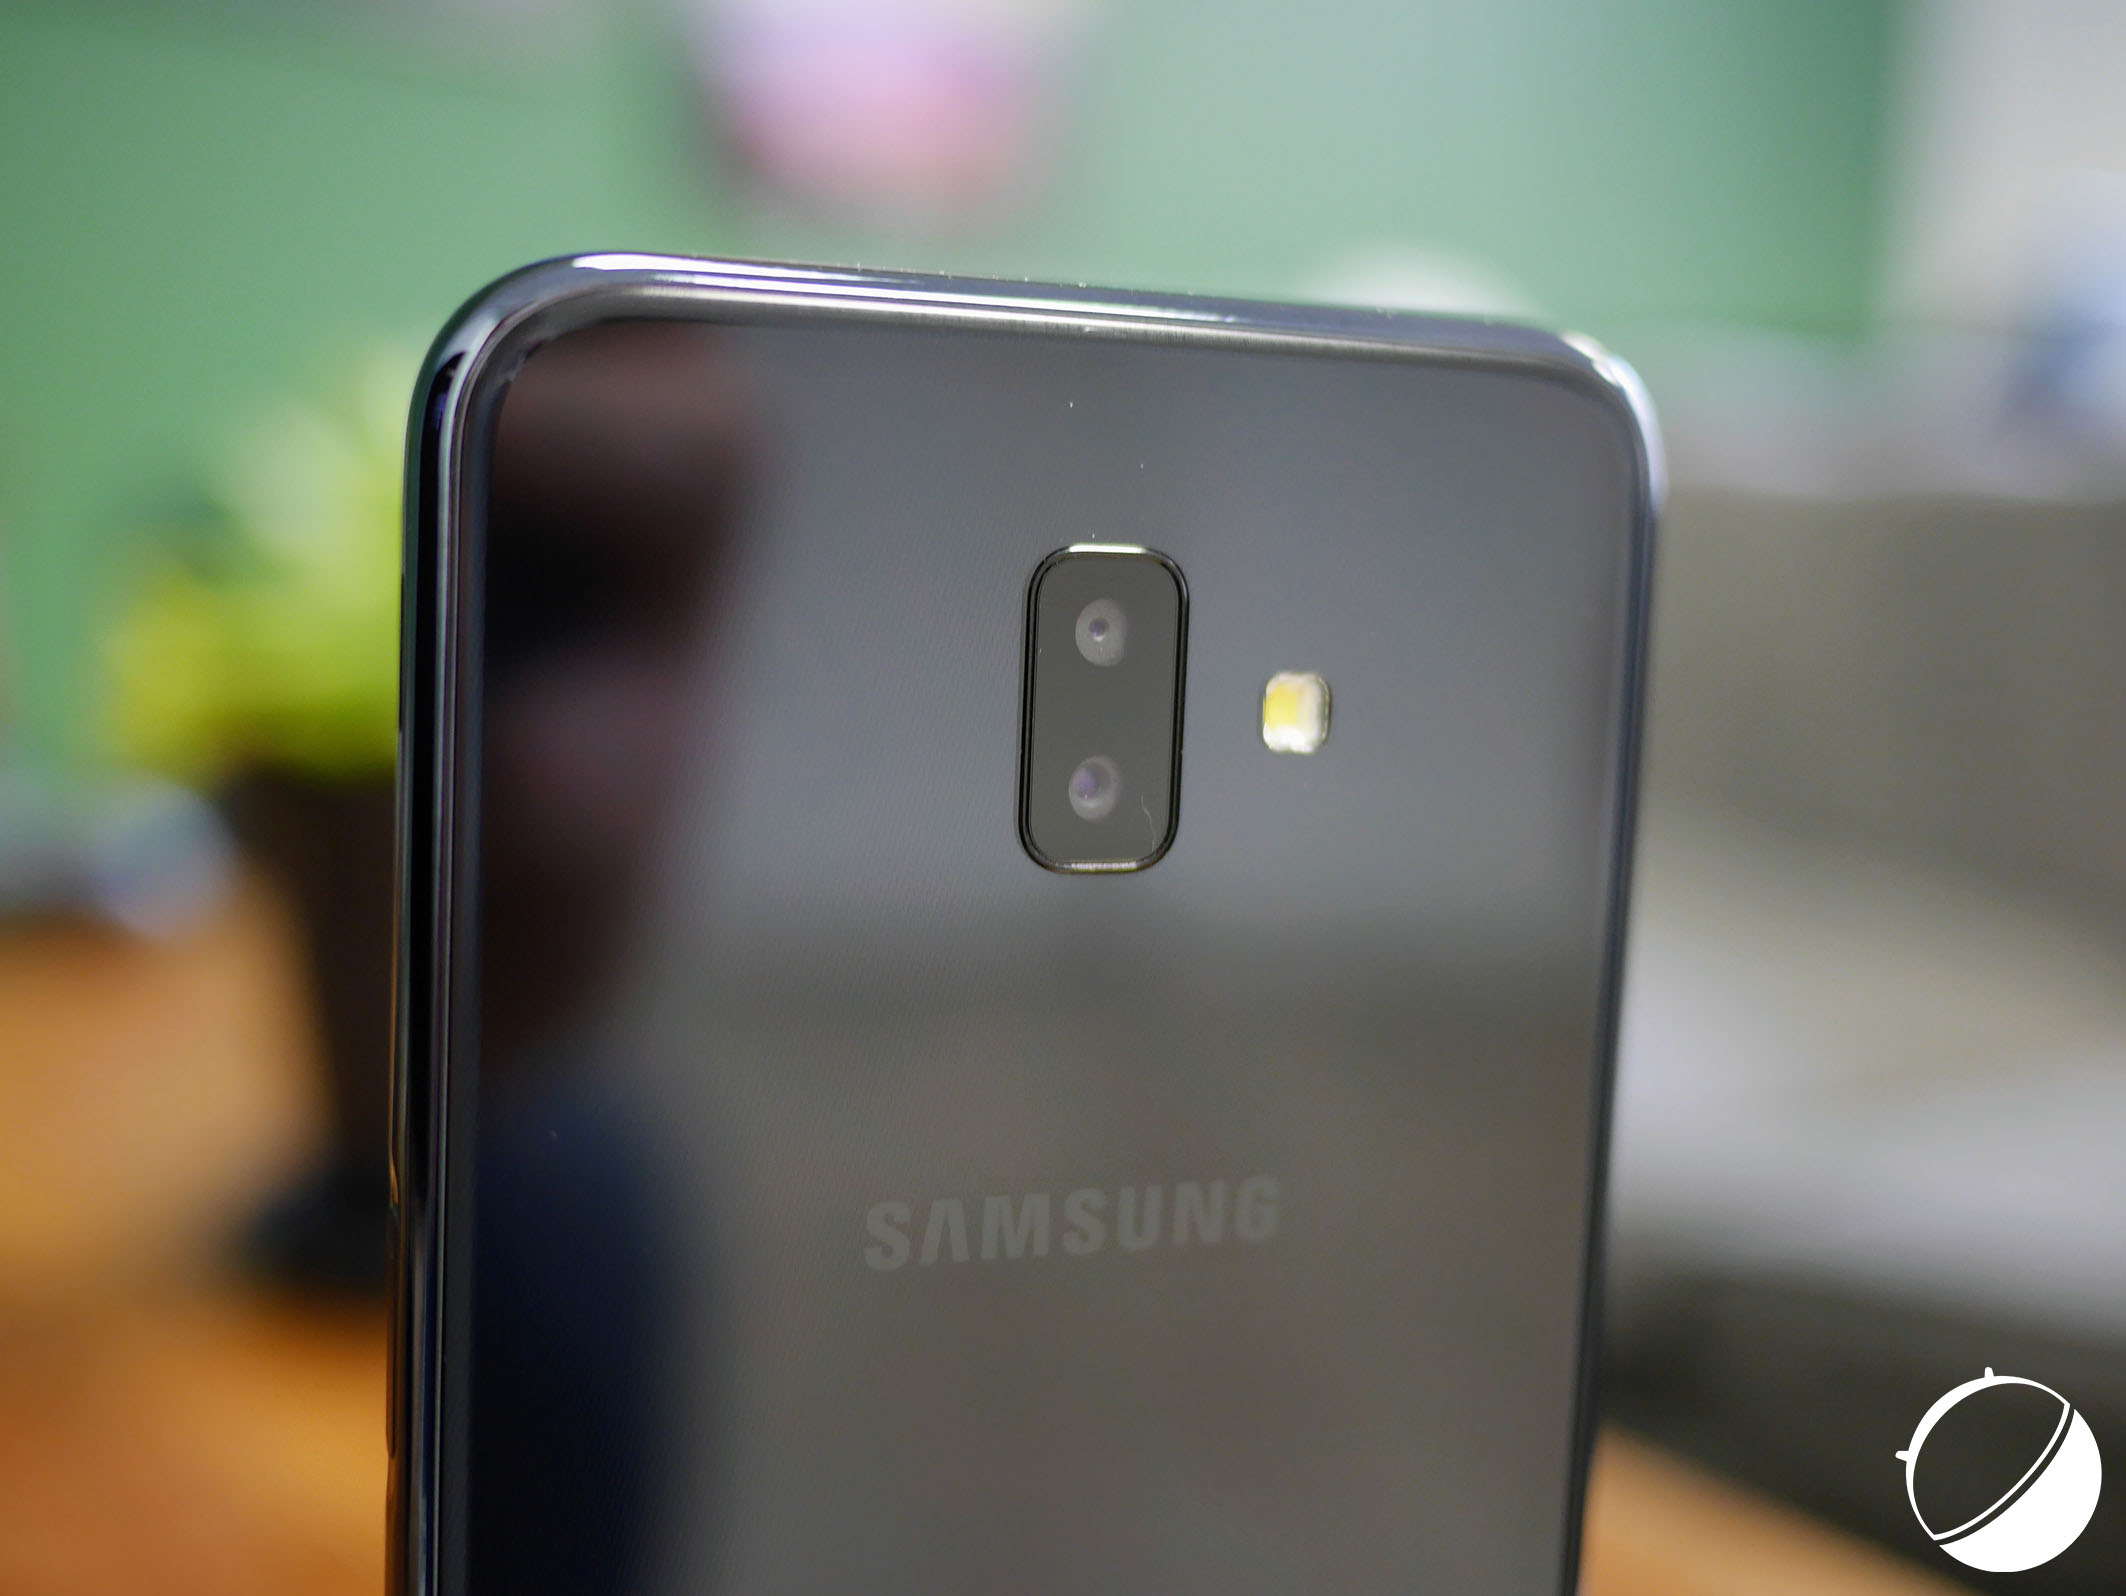 Обзор смартфона Samsung Galaxy J6 plus: характеристики, достоинства и недостатки